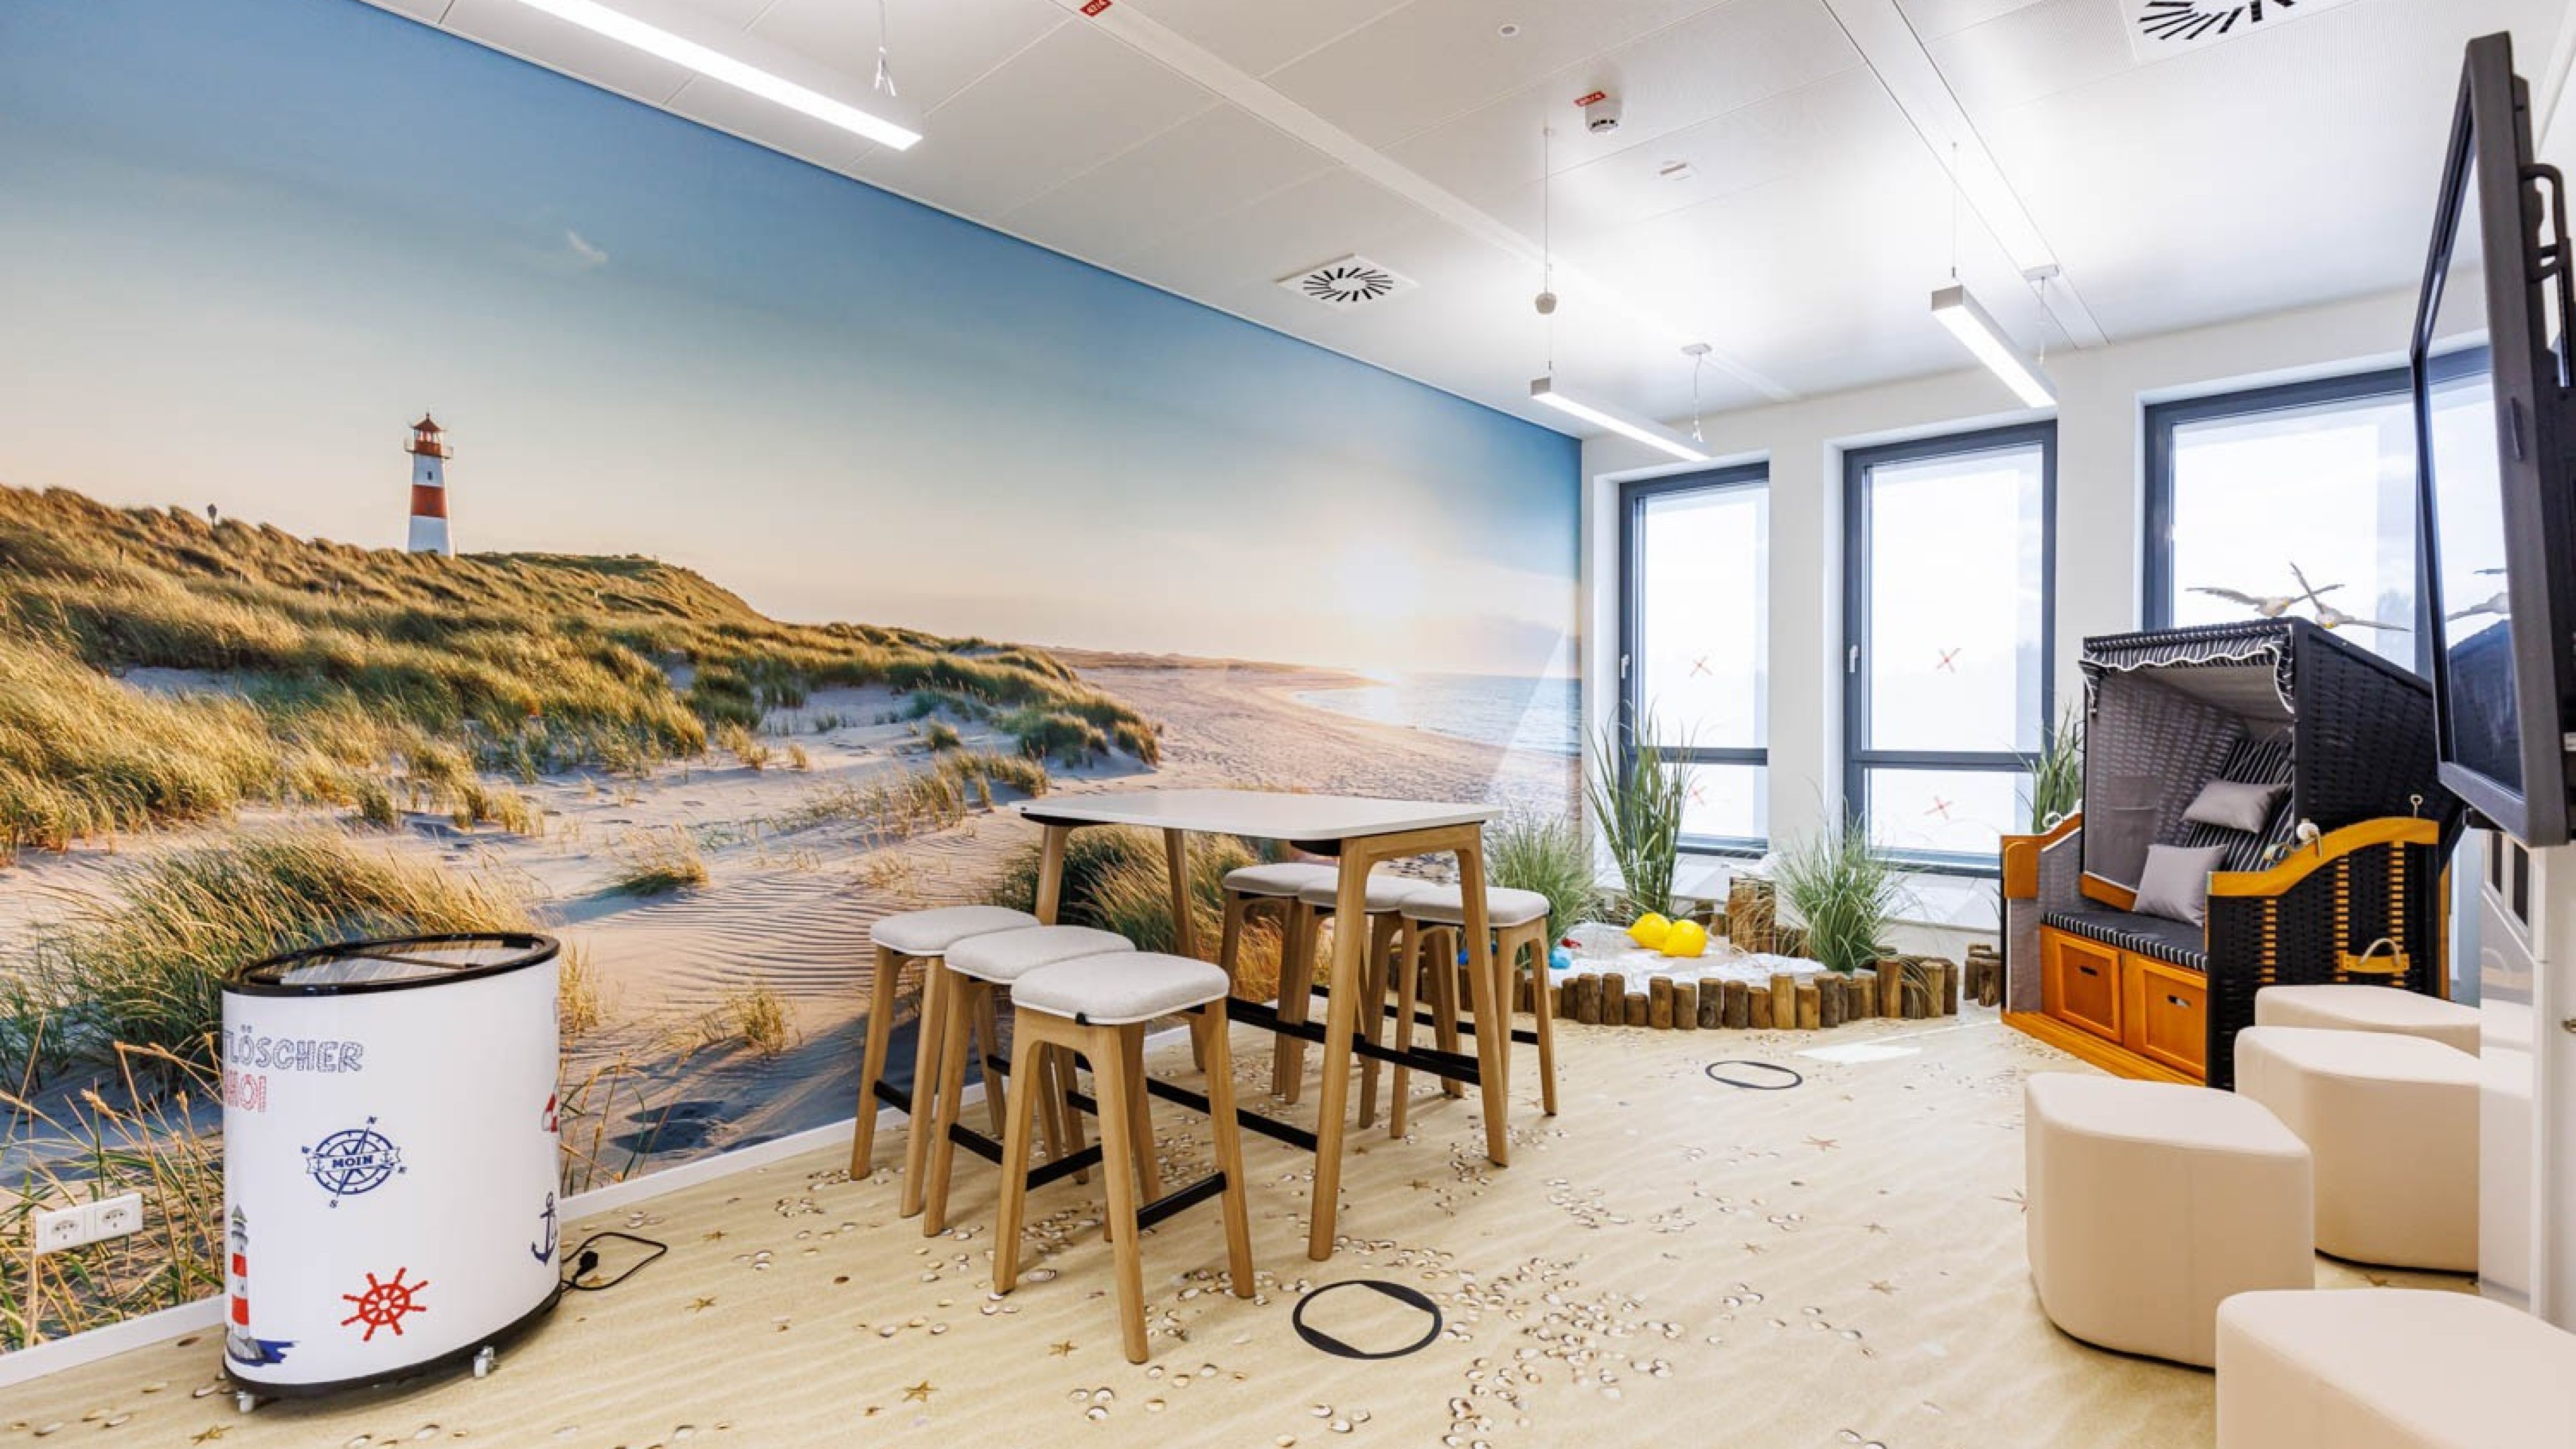 Raum mit Strand-Design mit Sitzgruppe